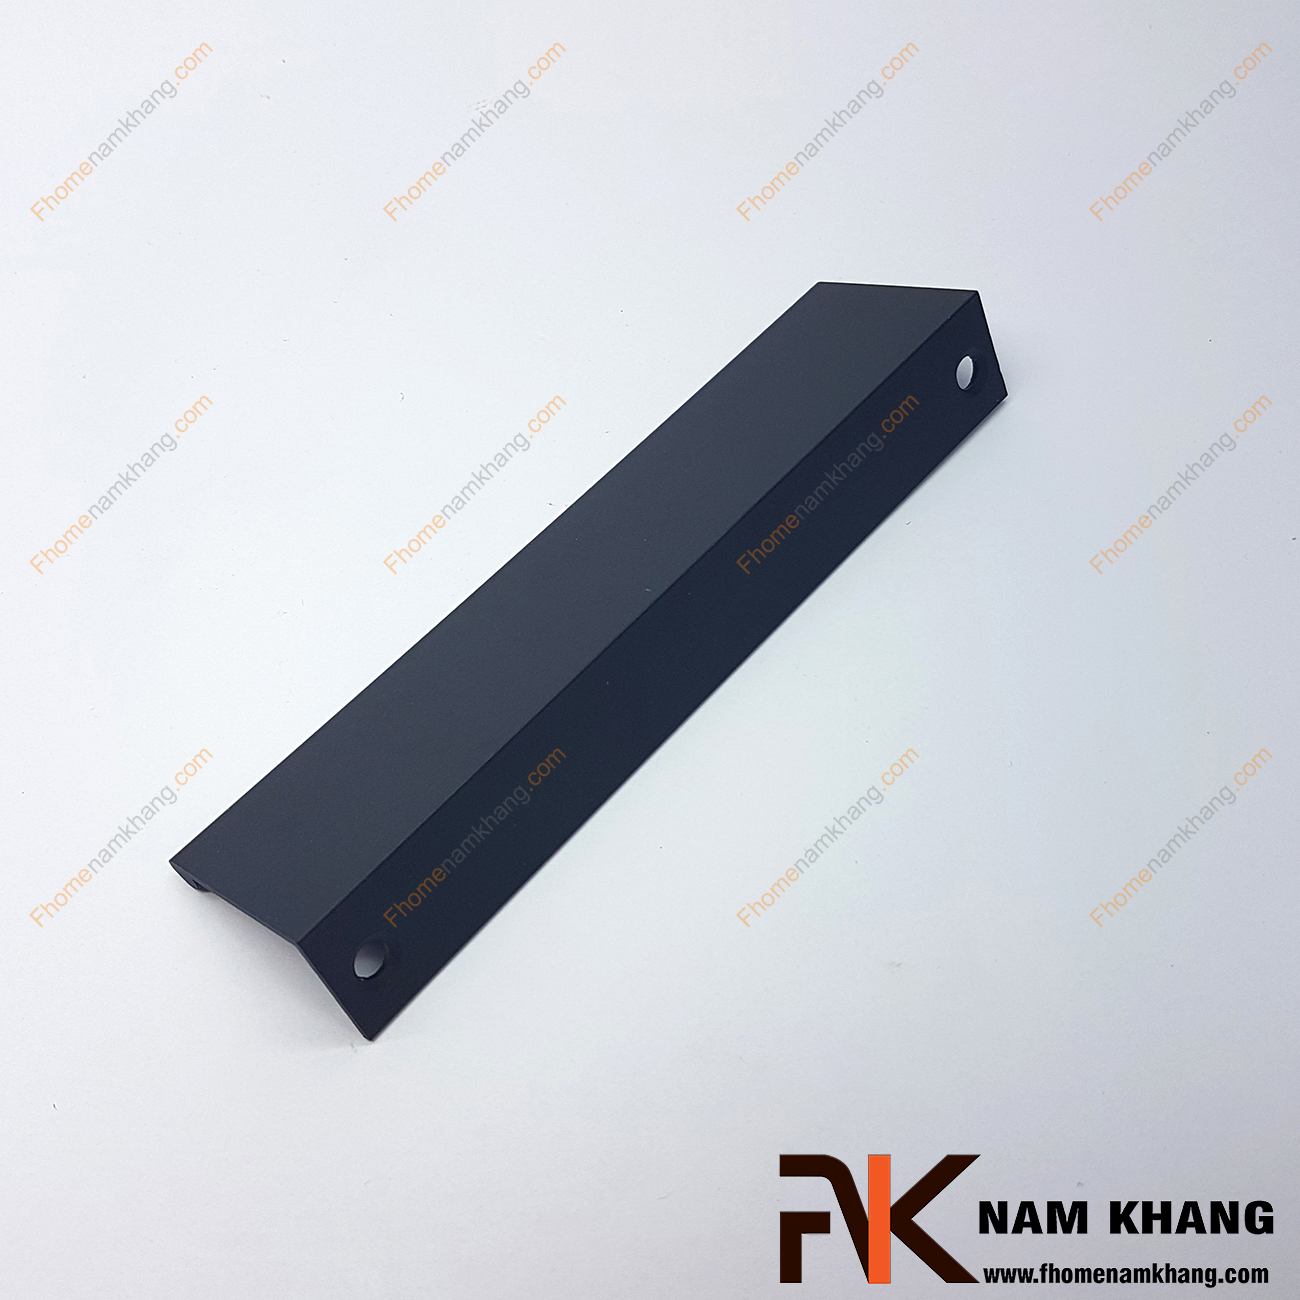 Tay nắm tủ dạng thanh dài màu đen NK312-D rất đặc trưng bởi thiết kế thanh mỏng dạng chữ V. Với bề dày của thanh là 2mm và được sản xuất từ vật liệu cao cấp